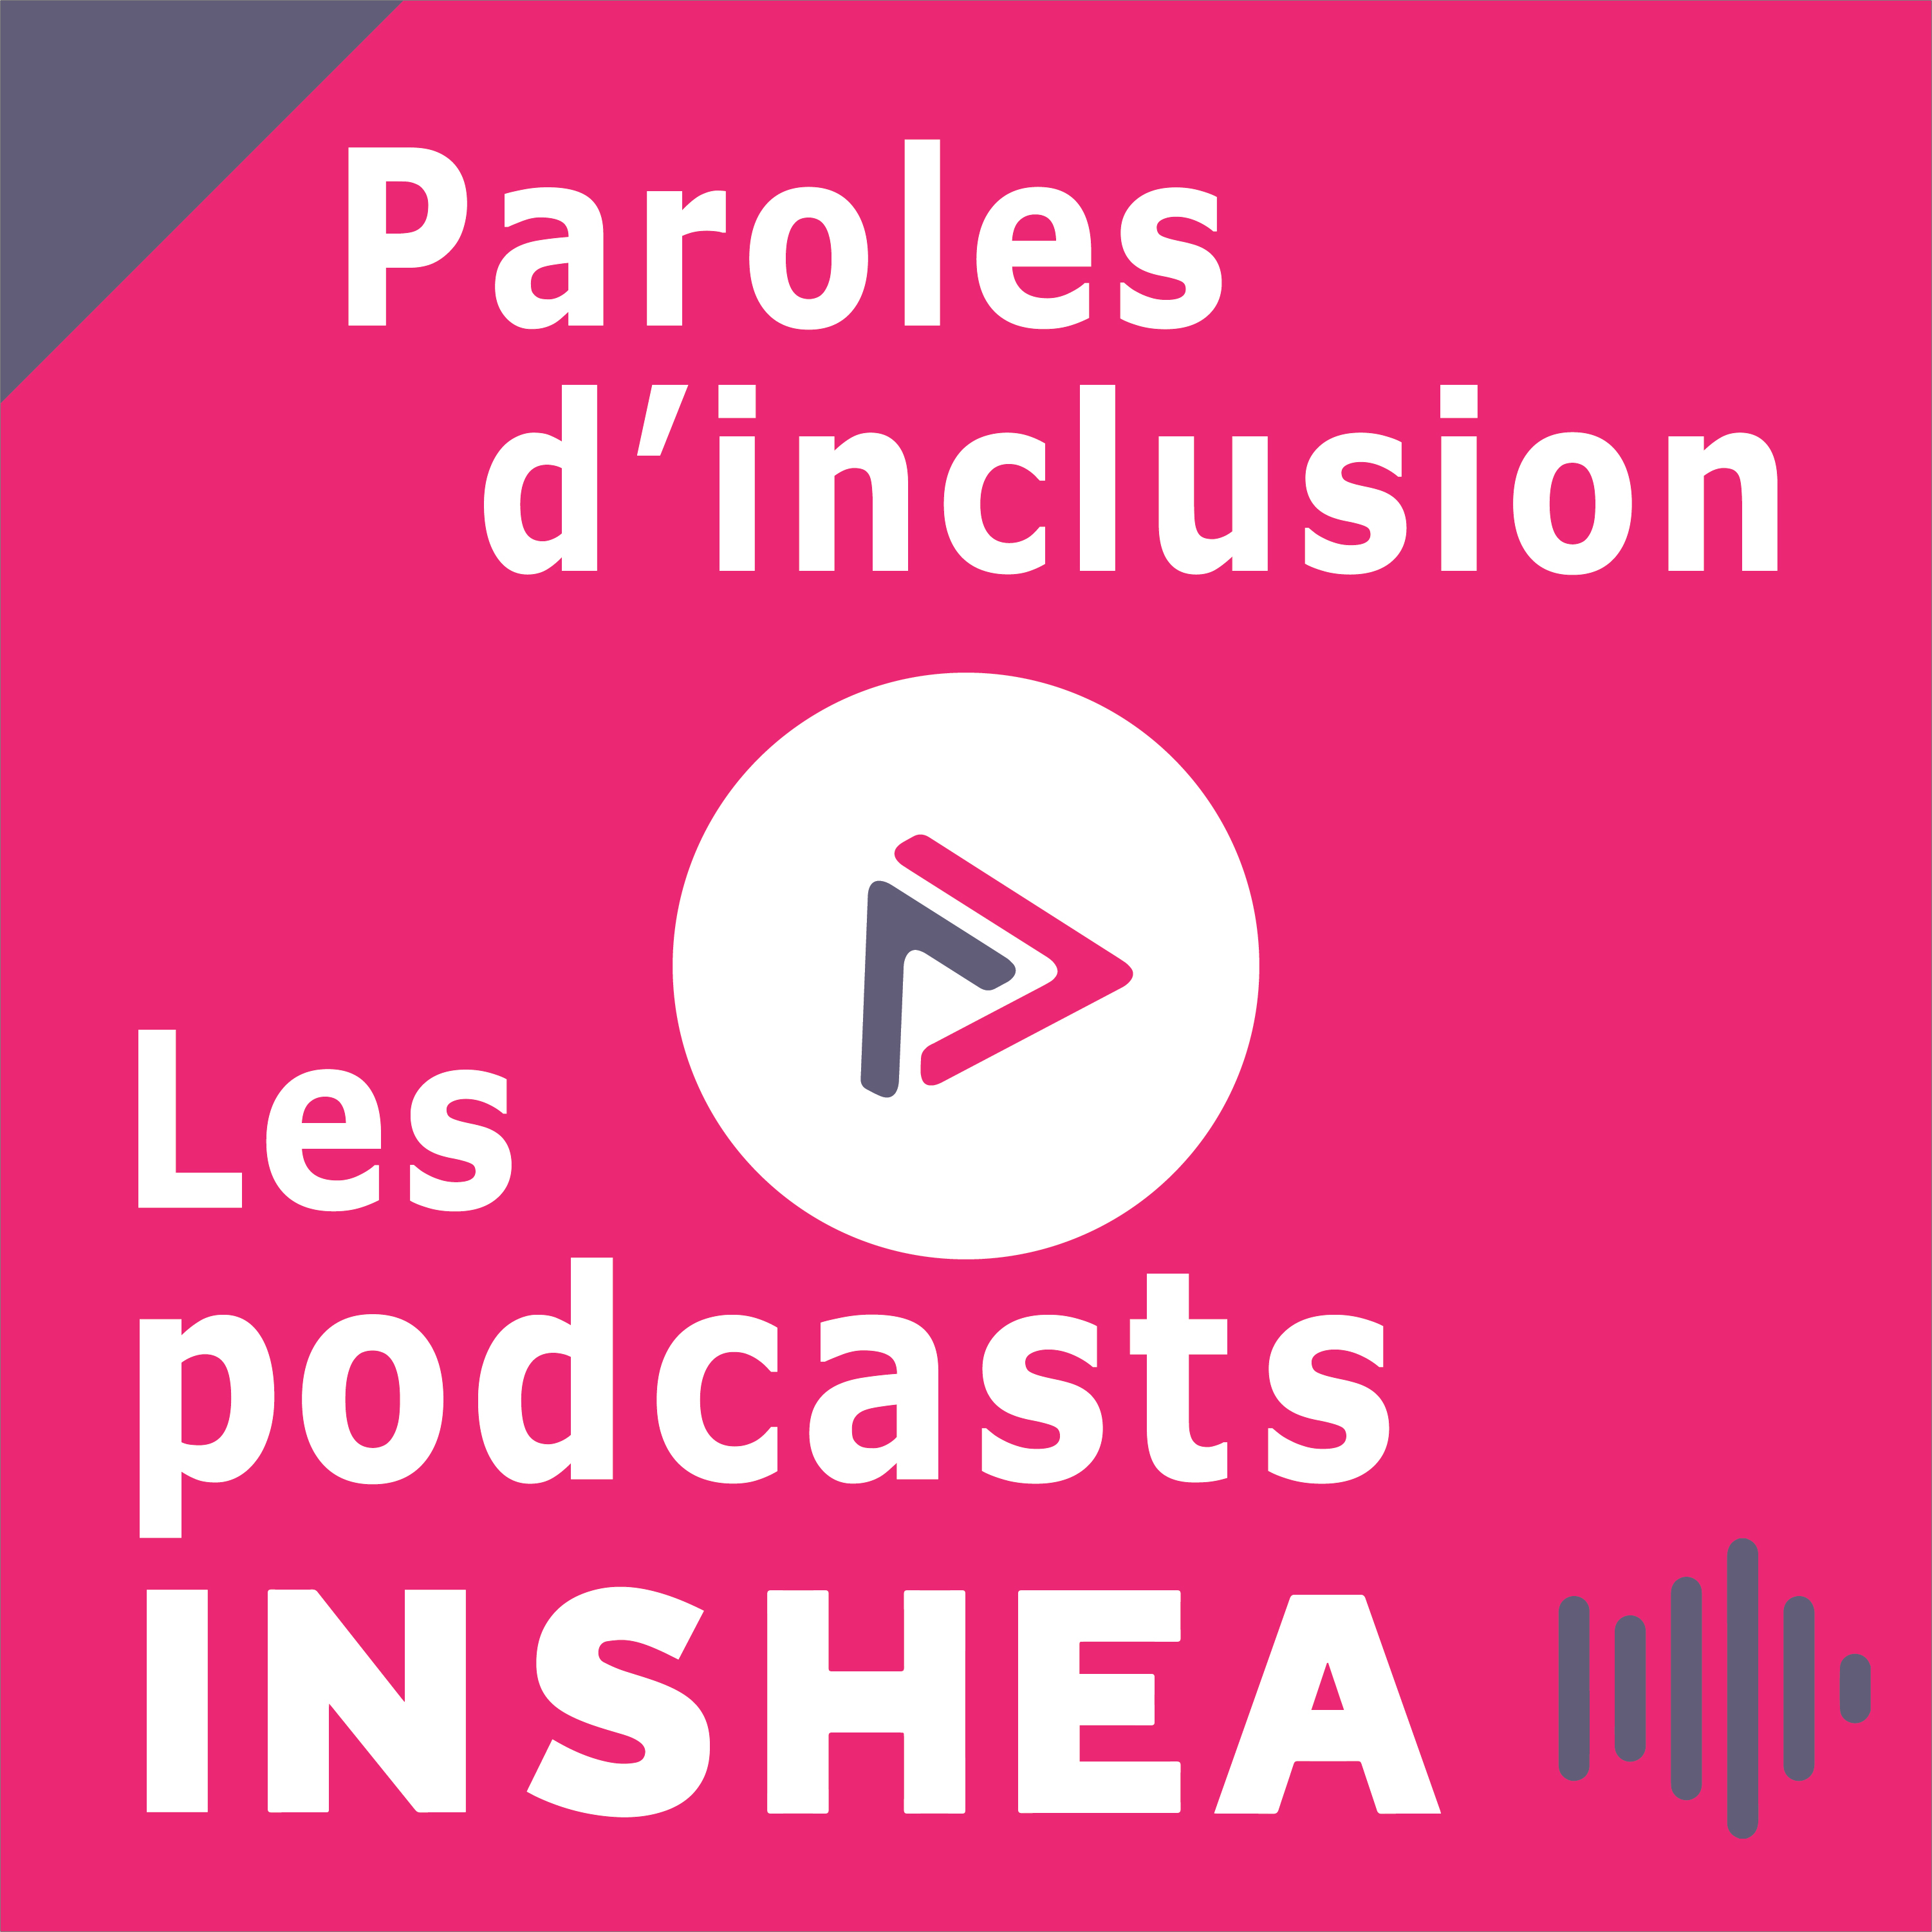 Couverture de la série de podcasts INSHEA : Paroles d'inclusion